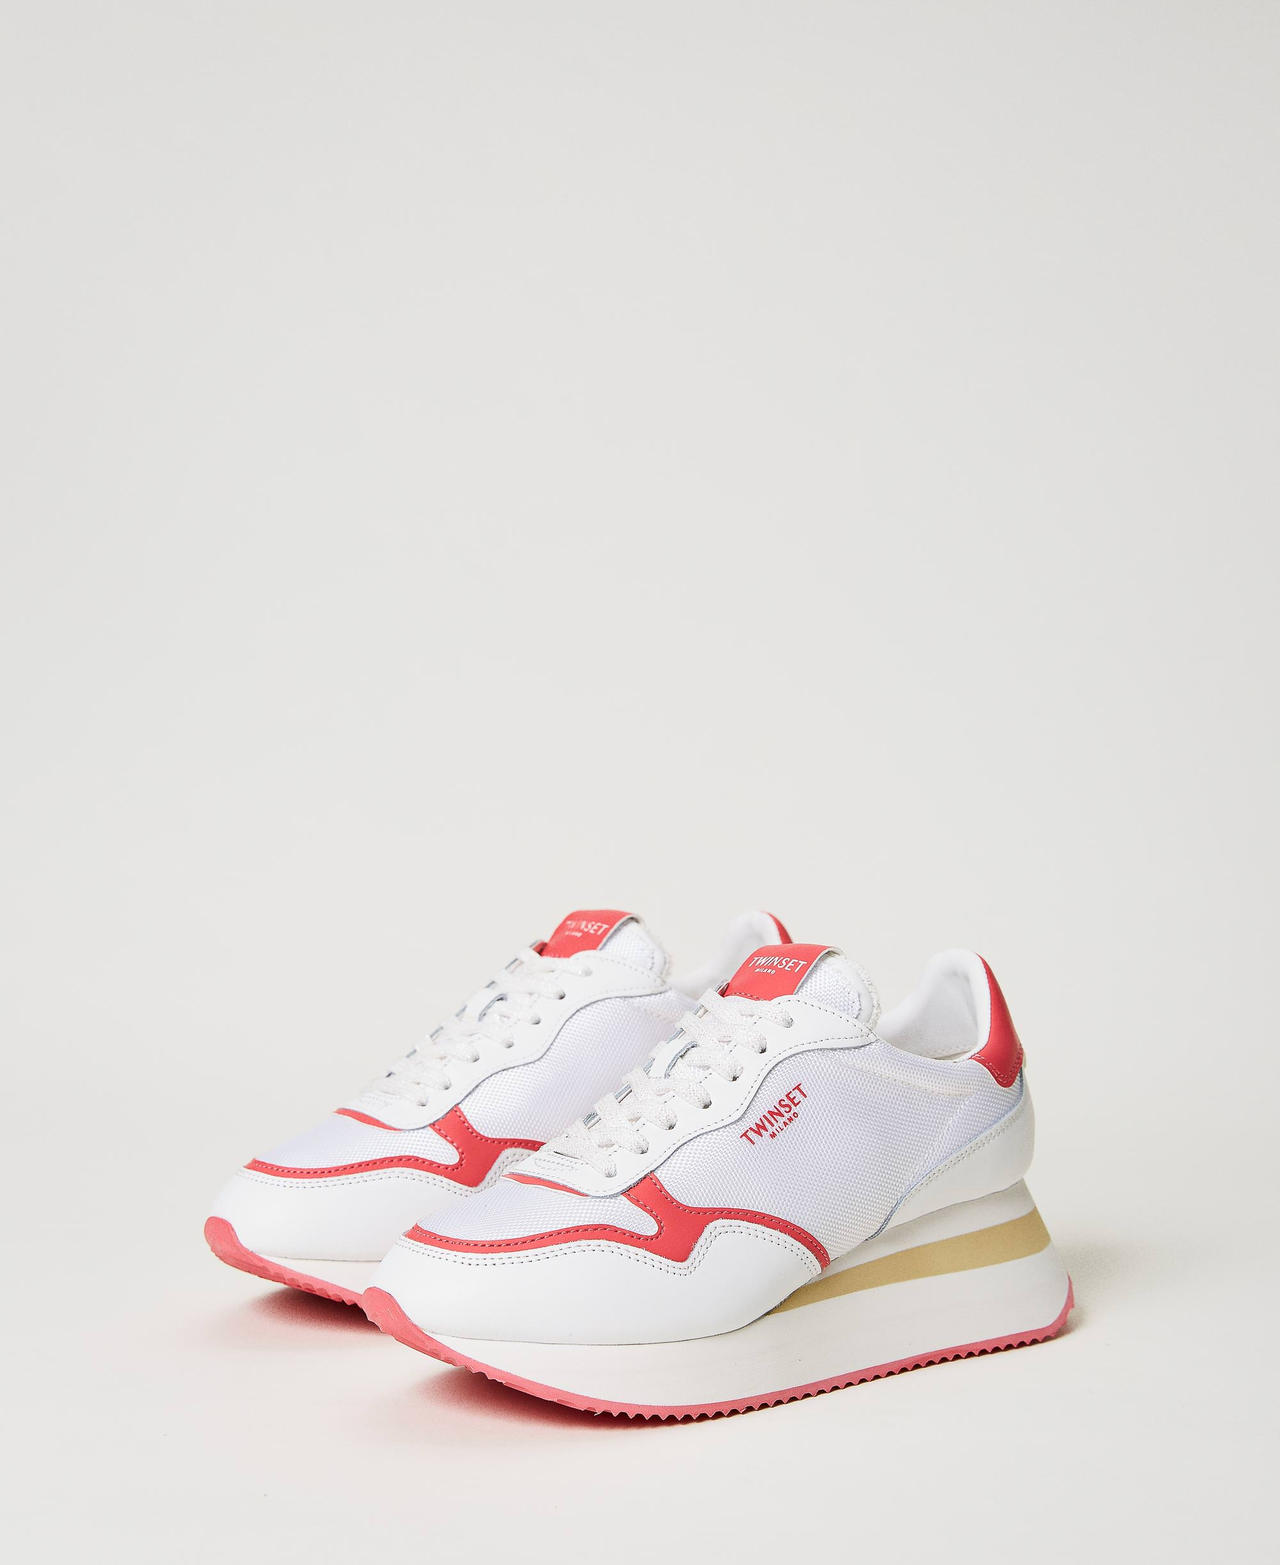 Sneakers wedge con inserti a contrasto Bicolor Bianco Ottico / Fucsia "Azalea" Donna 231TCP018-02